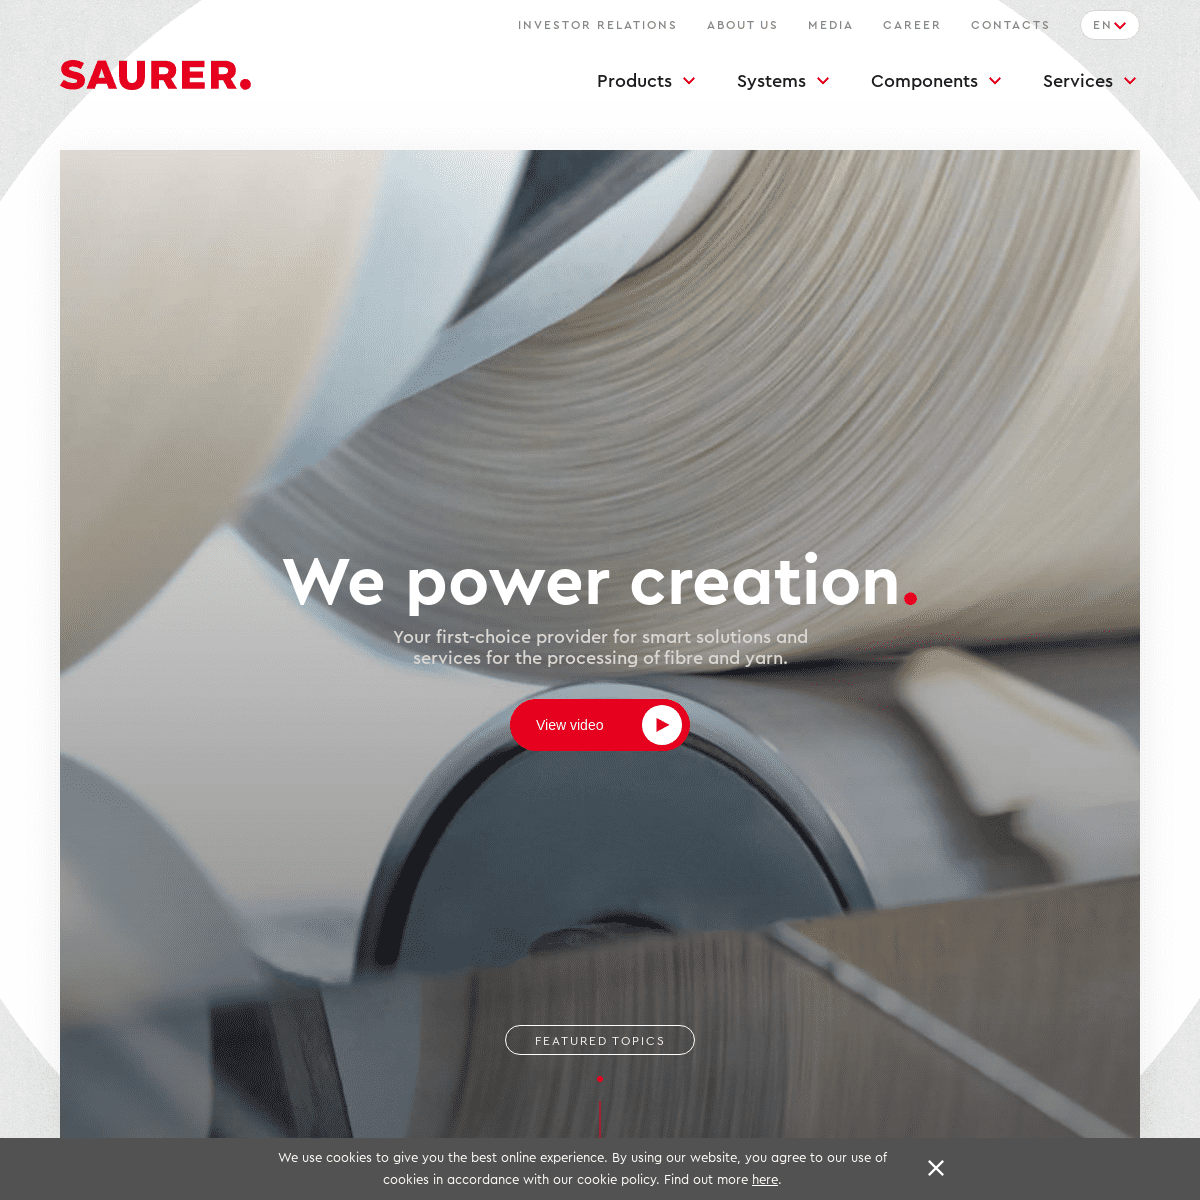 A complete backup of saurer.com